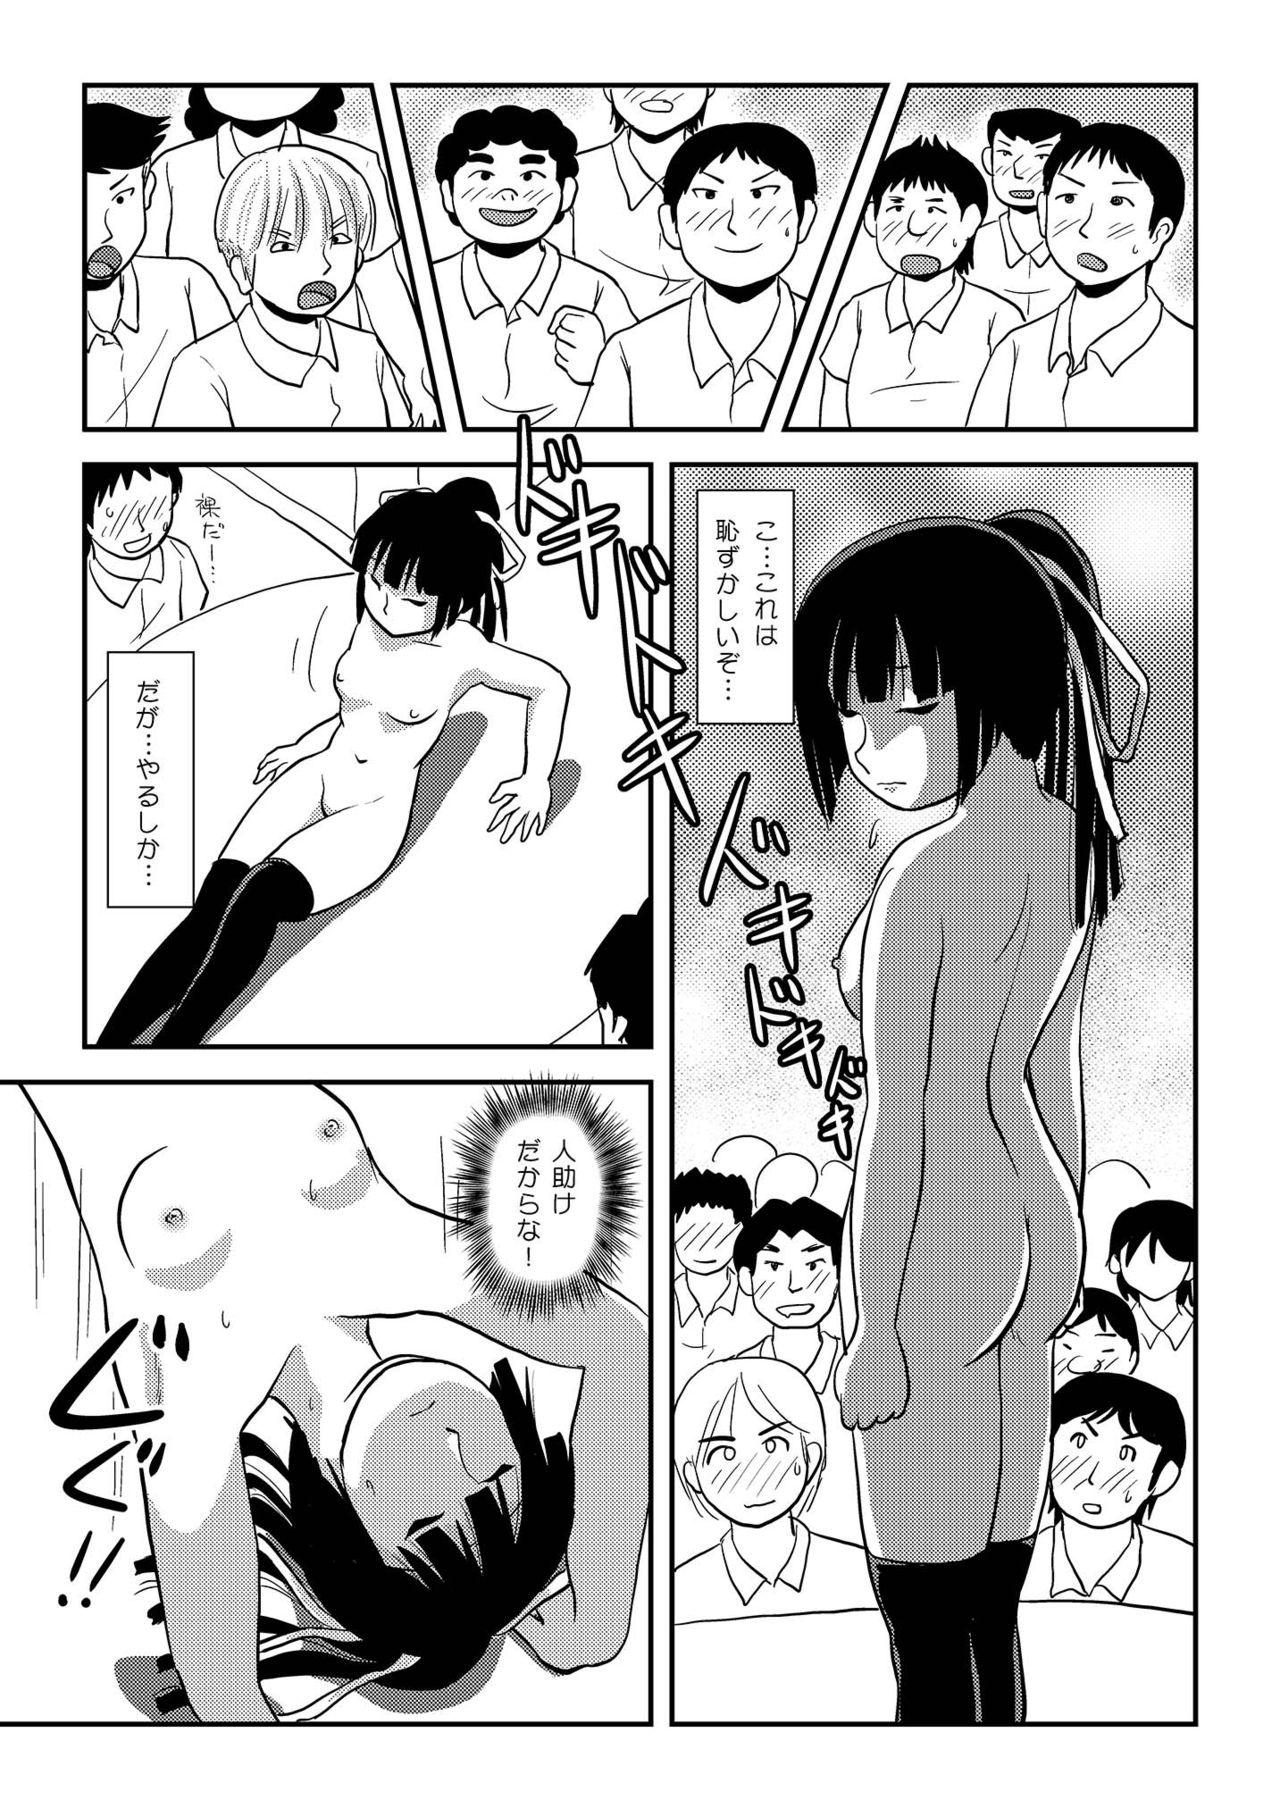 Small Tits Sakura Kotaka no Roshutsubiyori 7 - Original Maid - Page 11